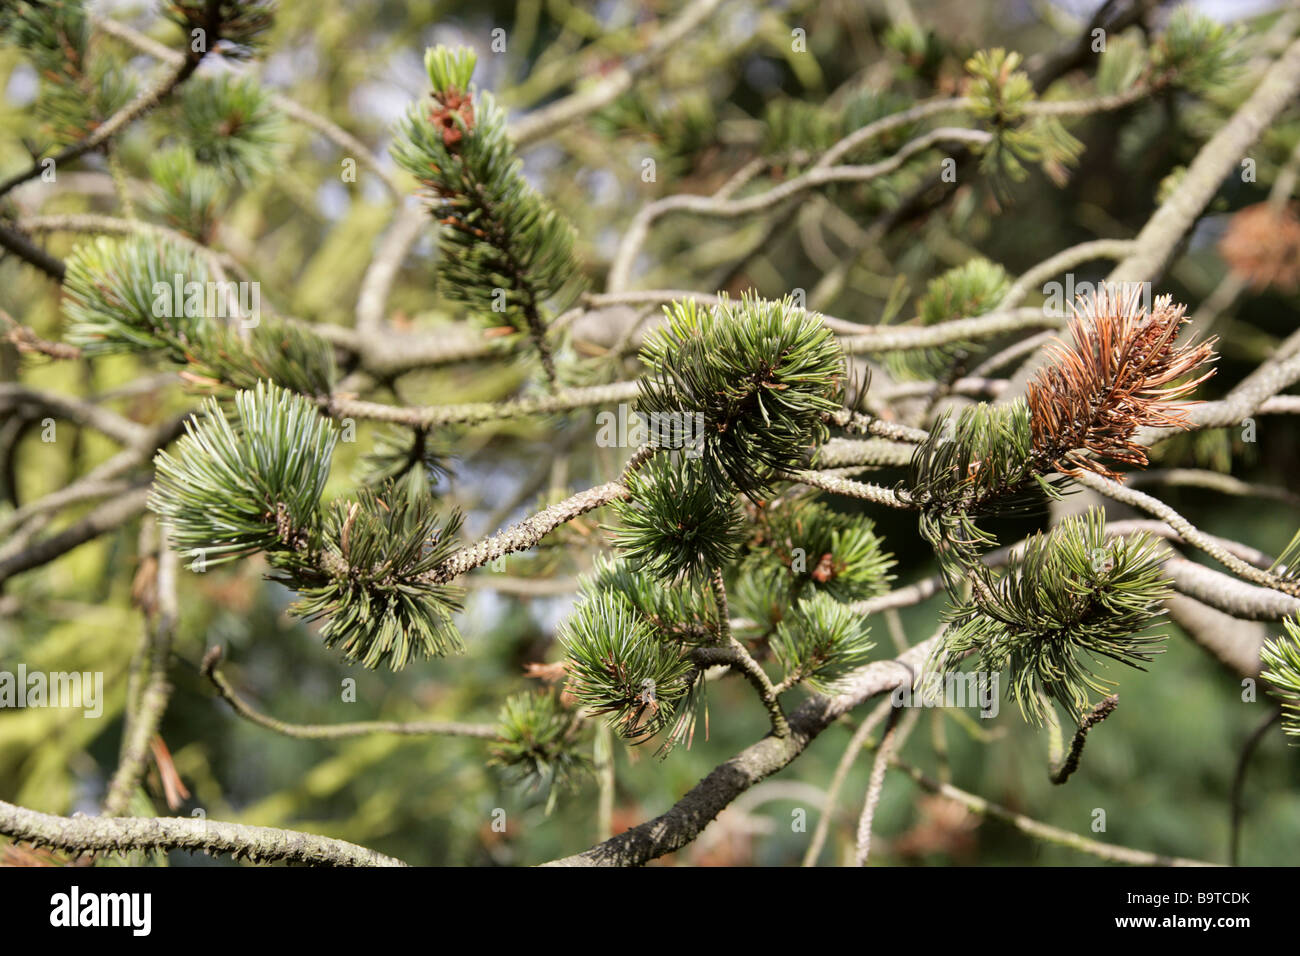 Cono de púas de pino, Pinus aristata, Pinaceae, al suroeste de EE.UU. Foto de stock